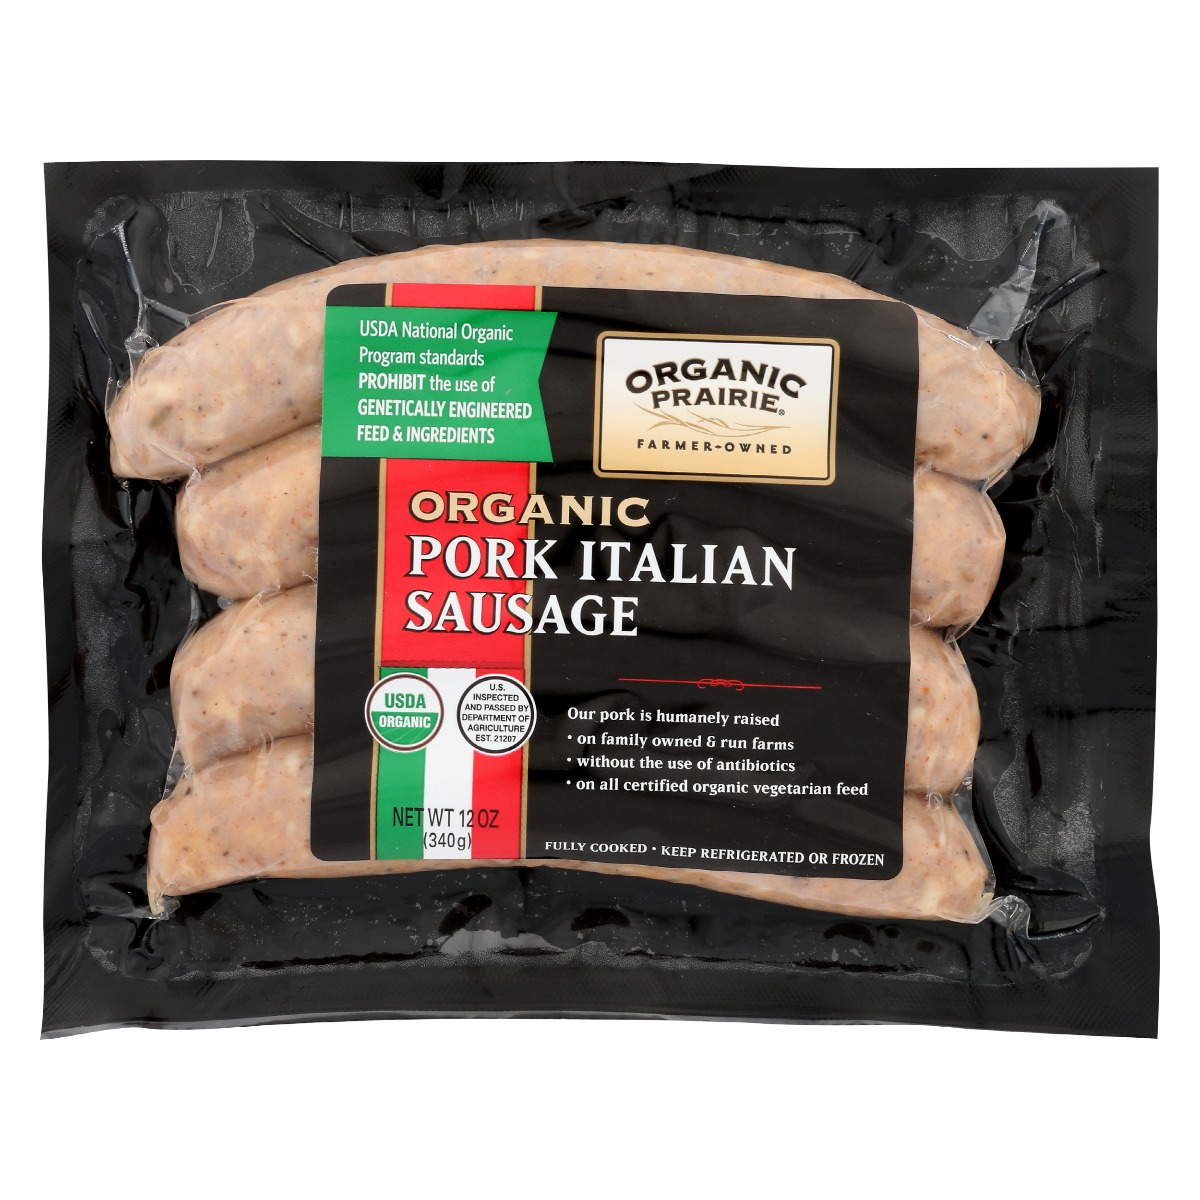 ORGANIC PRAIRIE: Pork Italian Sausage, 12 oz - 0093966001204